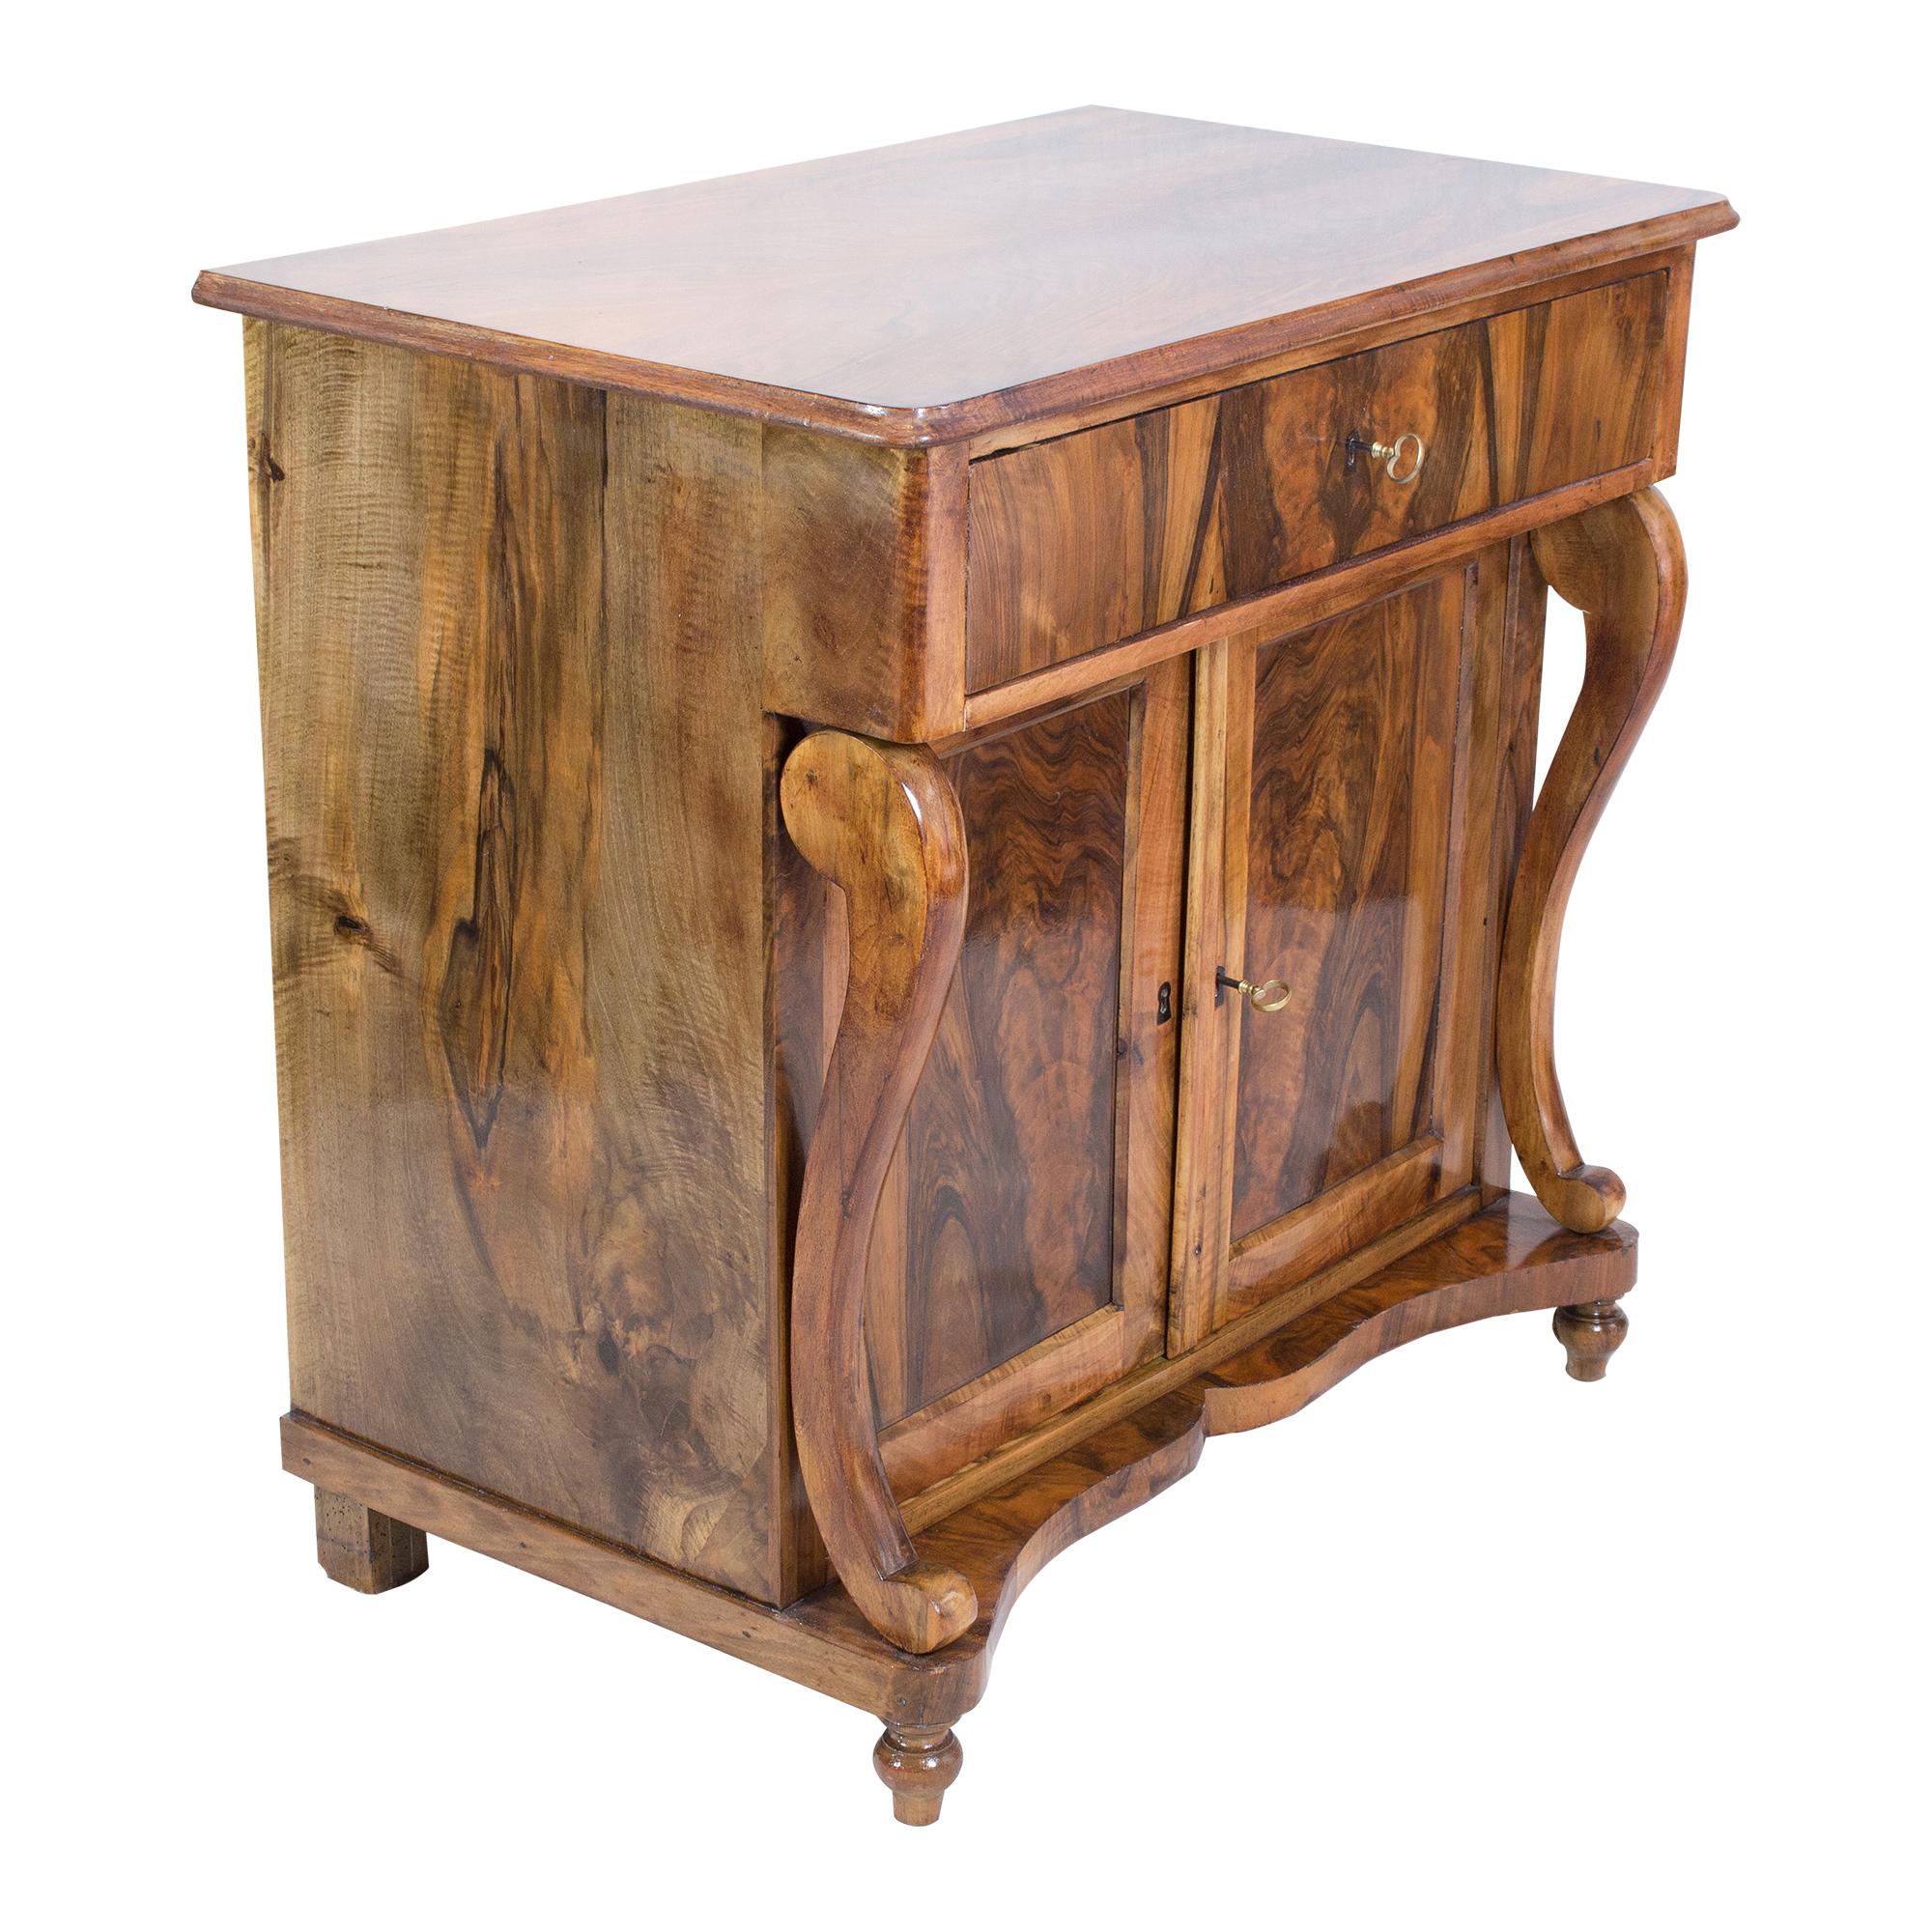 Dieses schöne Möbelstück ist ein Konsolen-Halbschrank aus dem Biedermeier. Der Halbschrank ist aus furniertem Nussbaumholz auf einem Fichtenkorpus und teilweise auch aus massivem Nussbaumholz gefertigt. Unter dem Deckel befindet sich eine Schublade